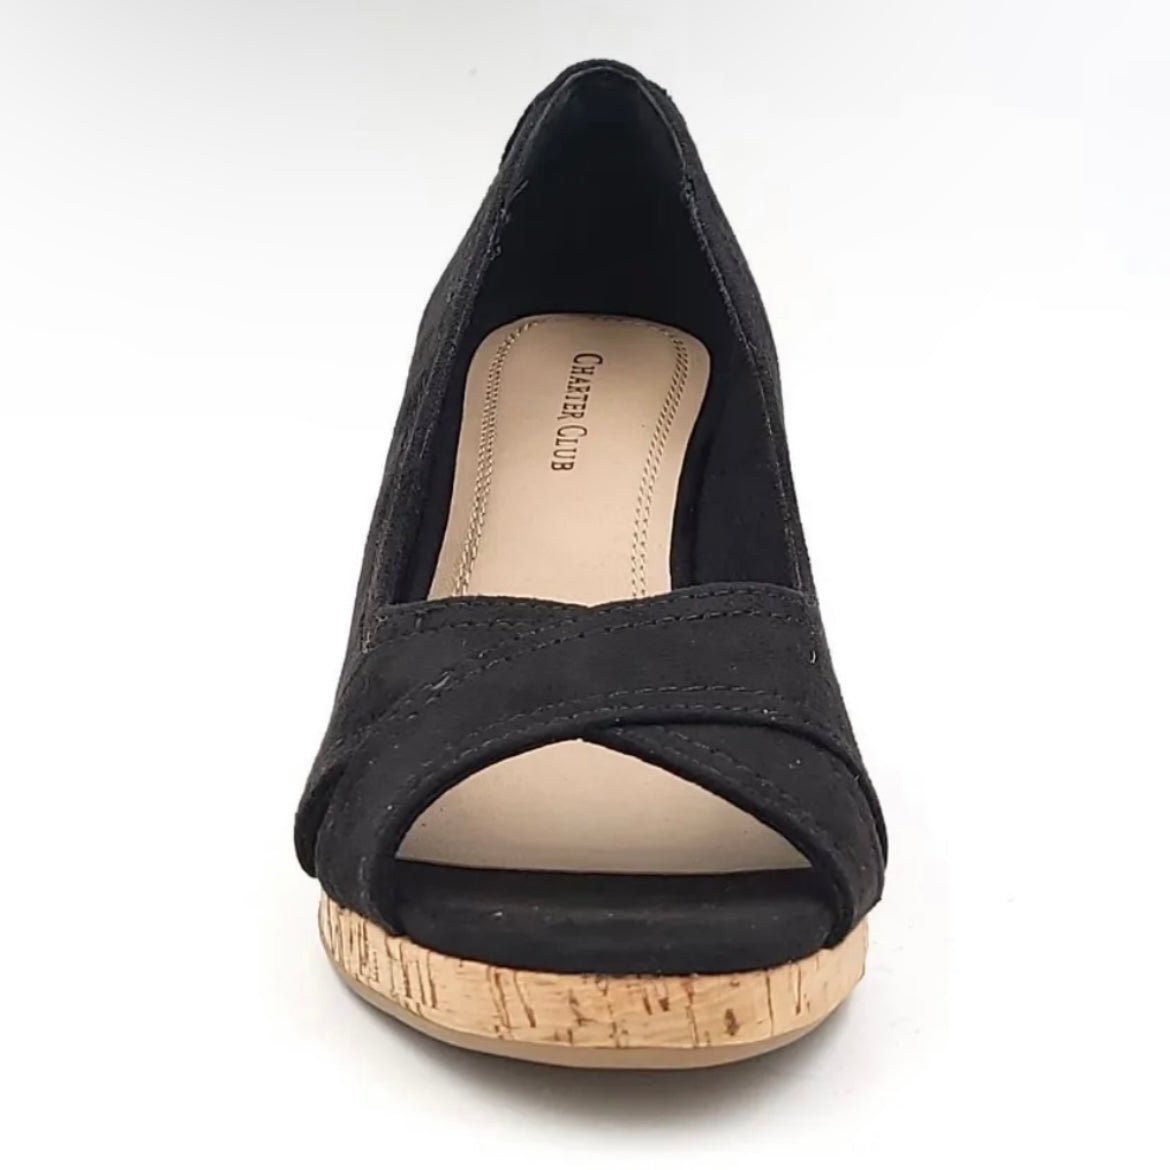 TONIIE Comfort Peep Toe Slip On Wedge Heels Platform Women's Sandals